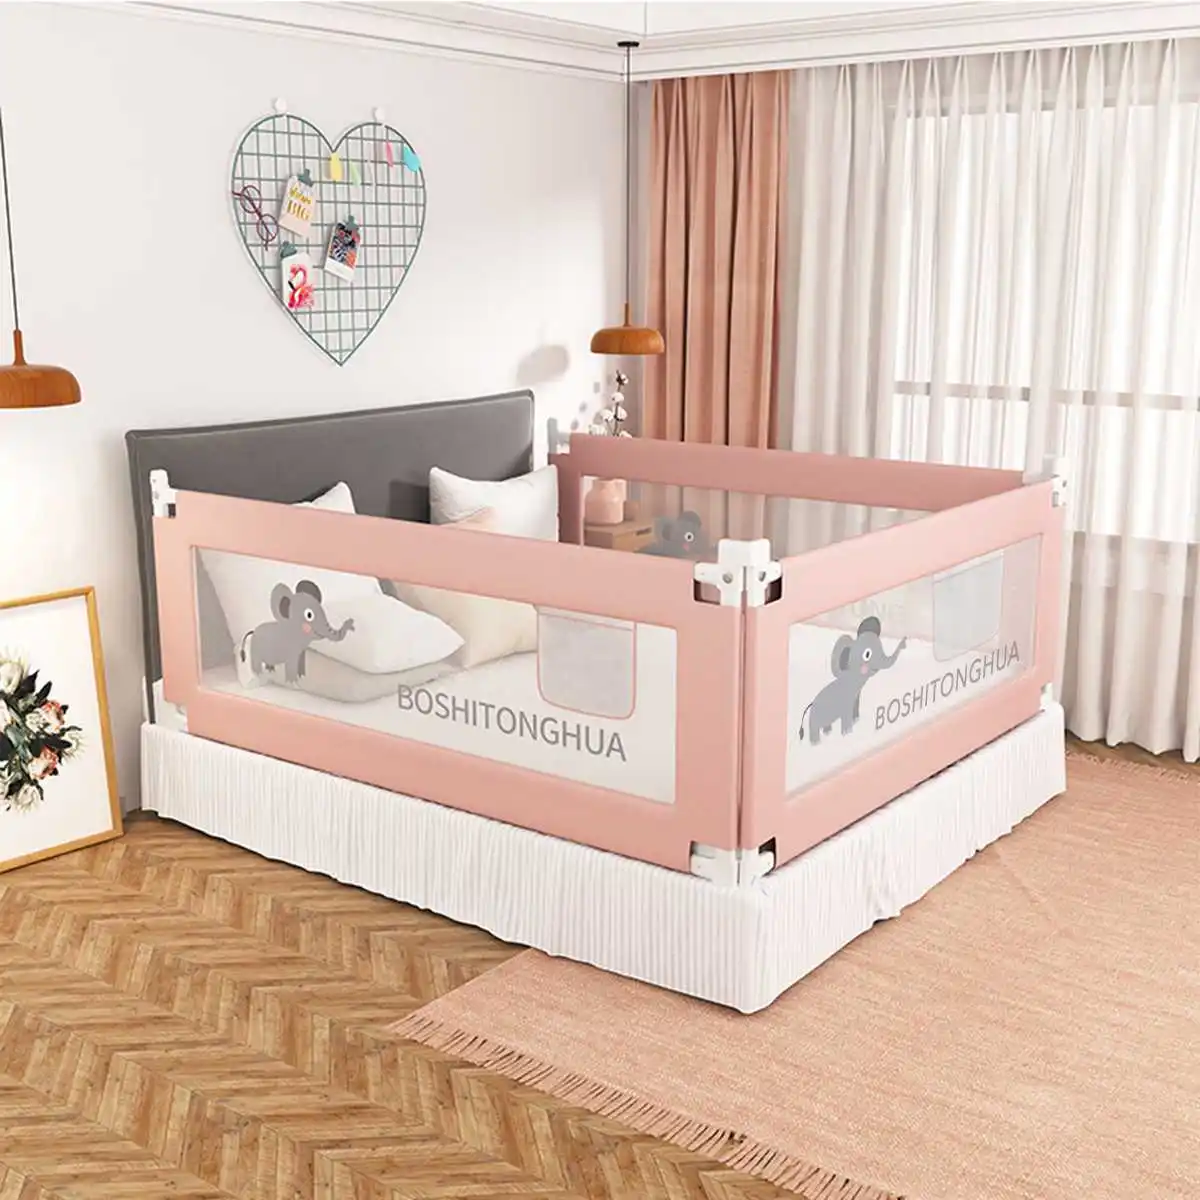 

Барьер для детской кроватки, ограждение для безопасности дома, регулируемый поручни для детской кроватки